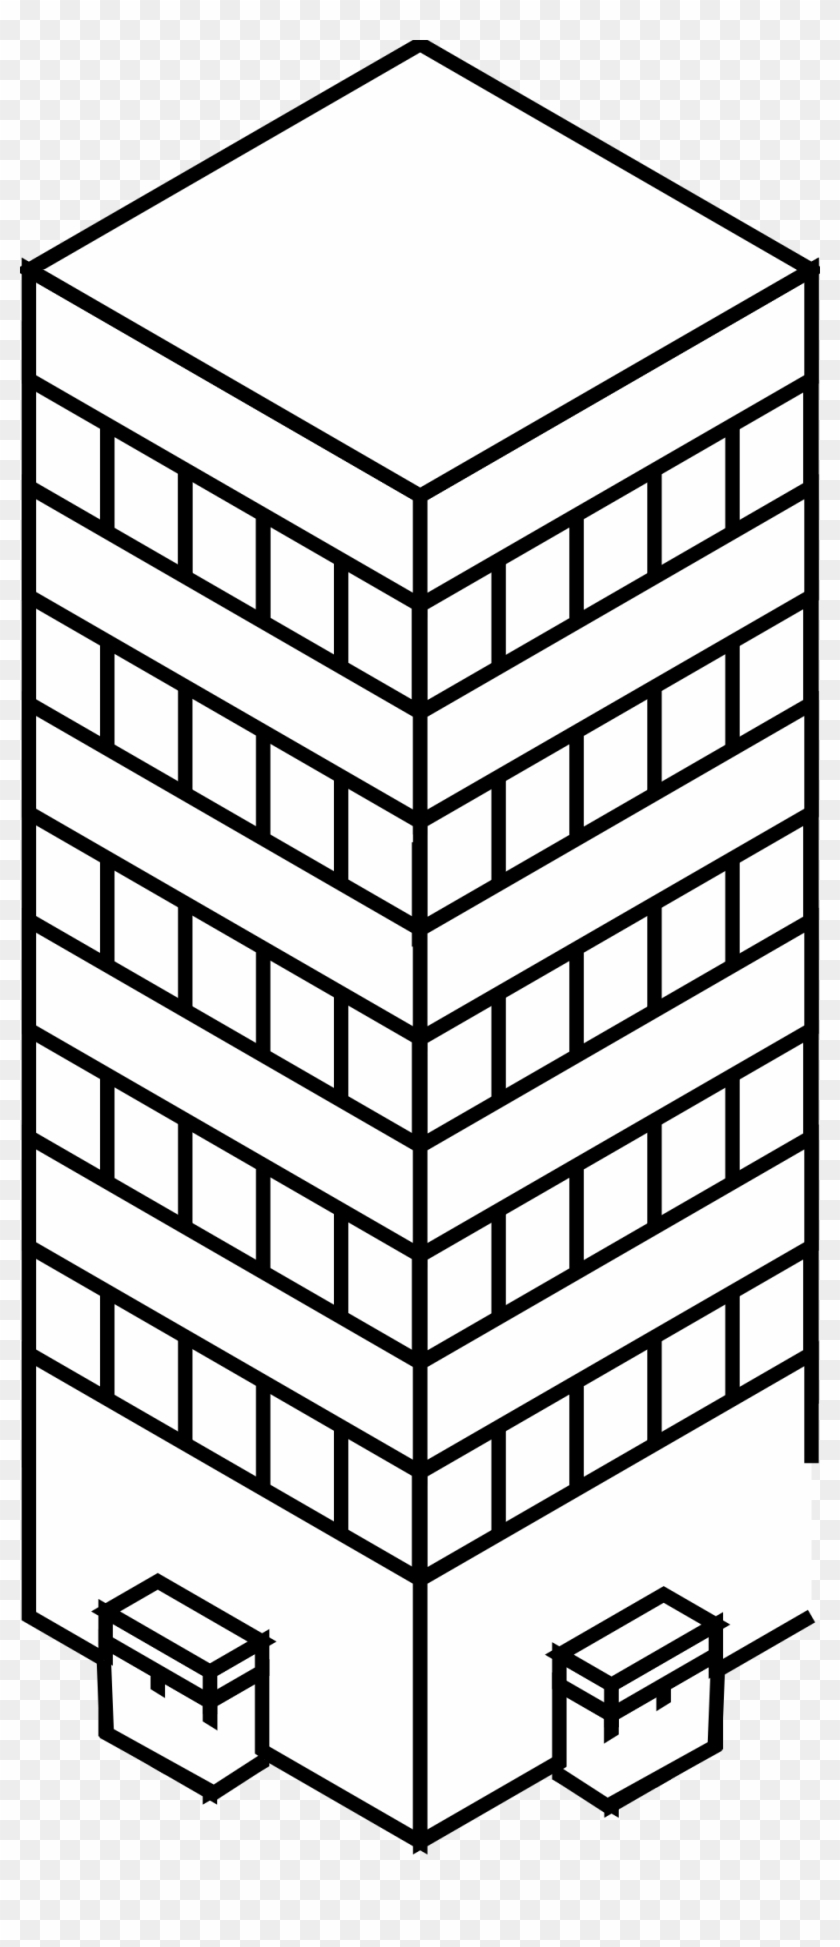 Skyscraper Clipart Black And White - Portable Network Graphics #181350